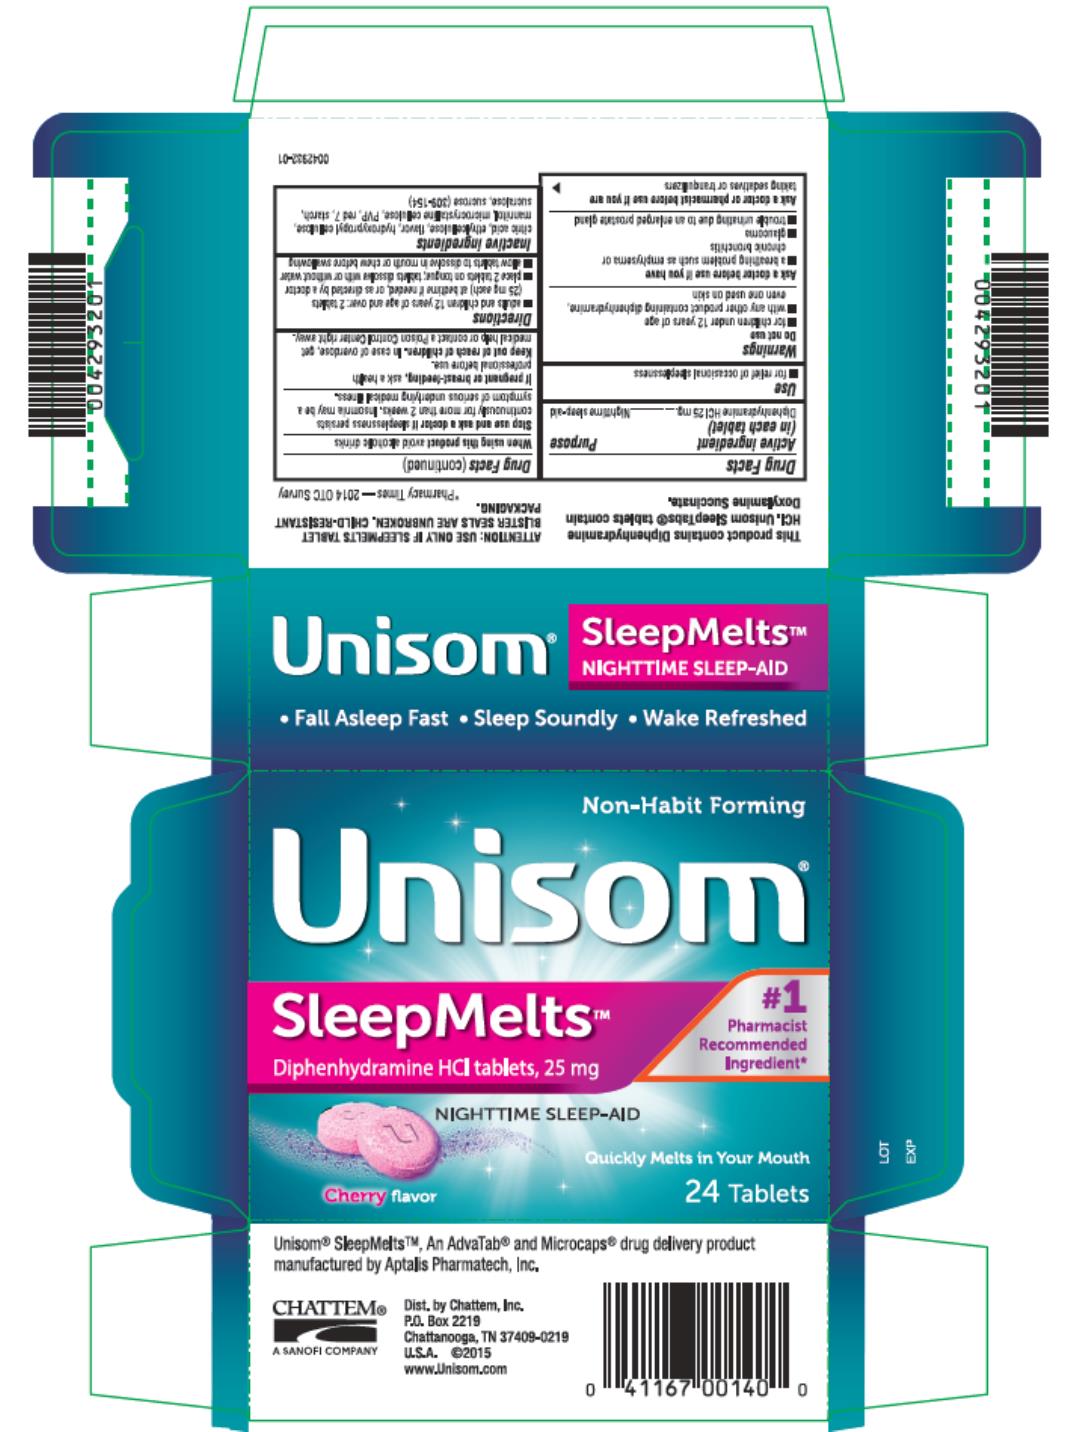 Unisom®
SleepMeltsTM 
Diphenhydramine HCI tablets, 25 mg
NIGHTTIME SLEEP-AID
24 QuickMelt Tablets
